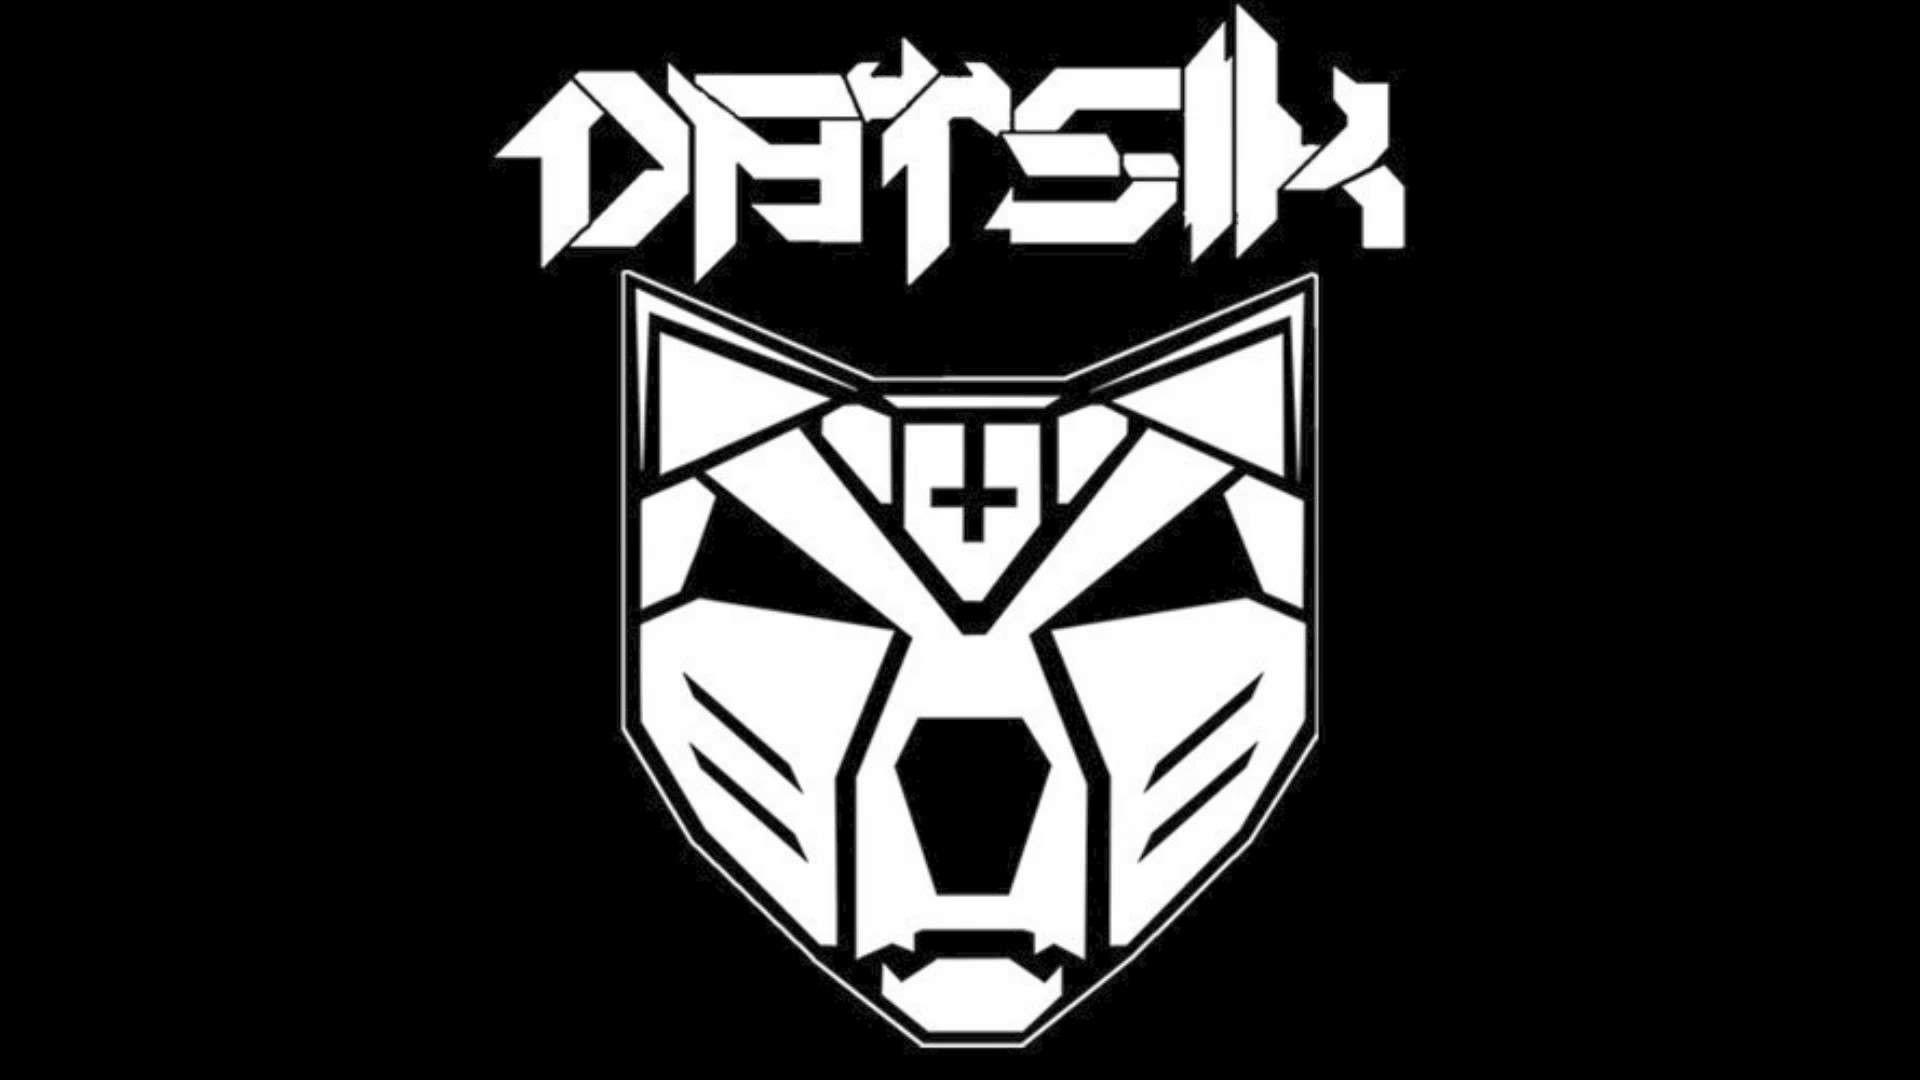 Datsik Logo - Datsik Wallpaper (72+ images)